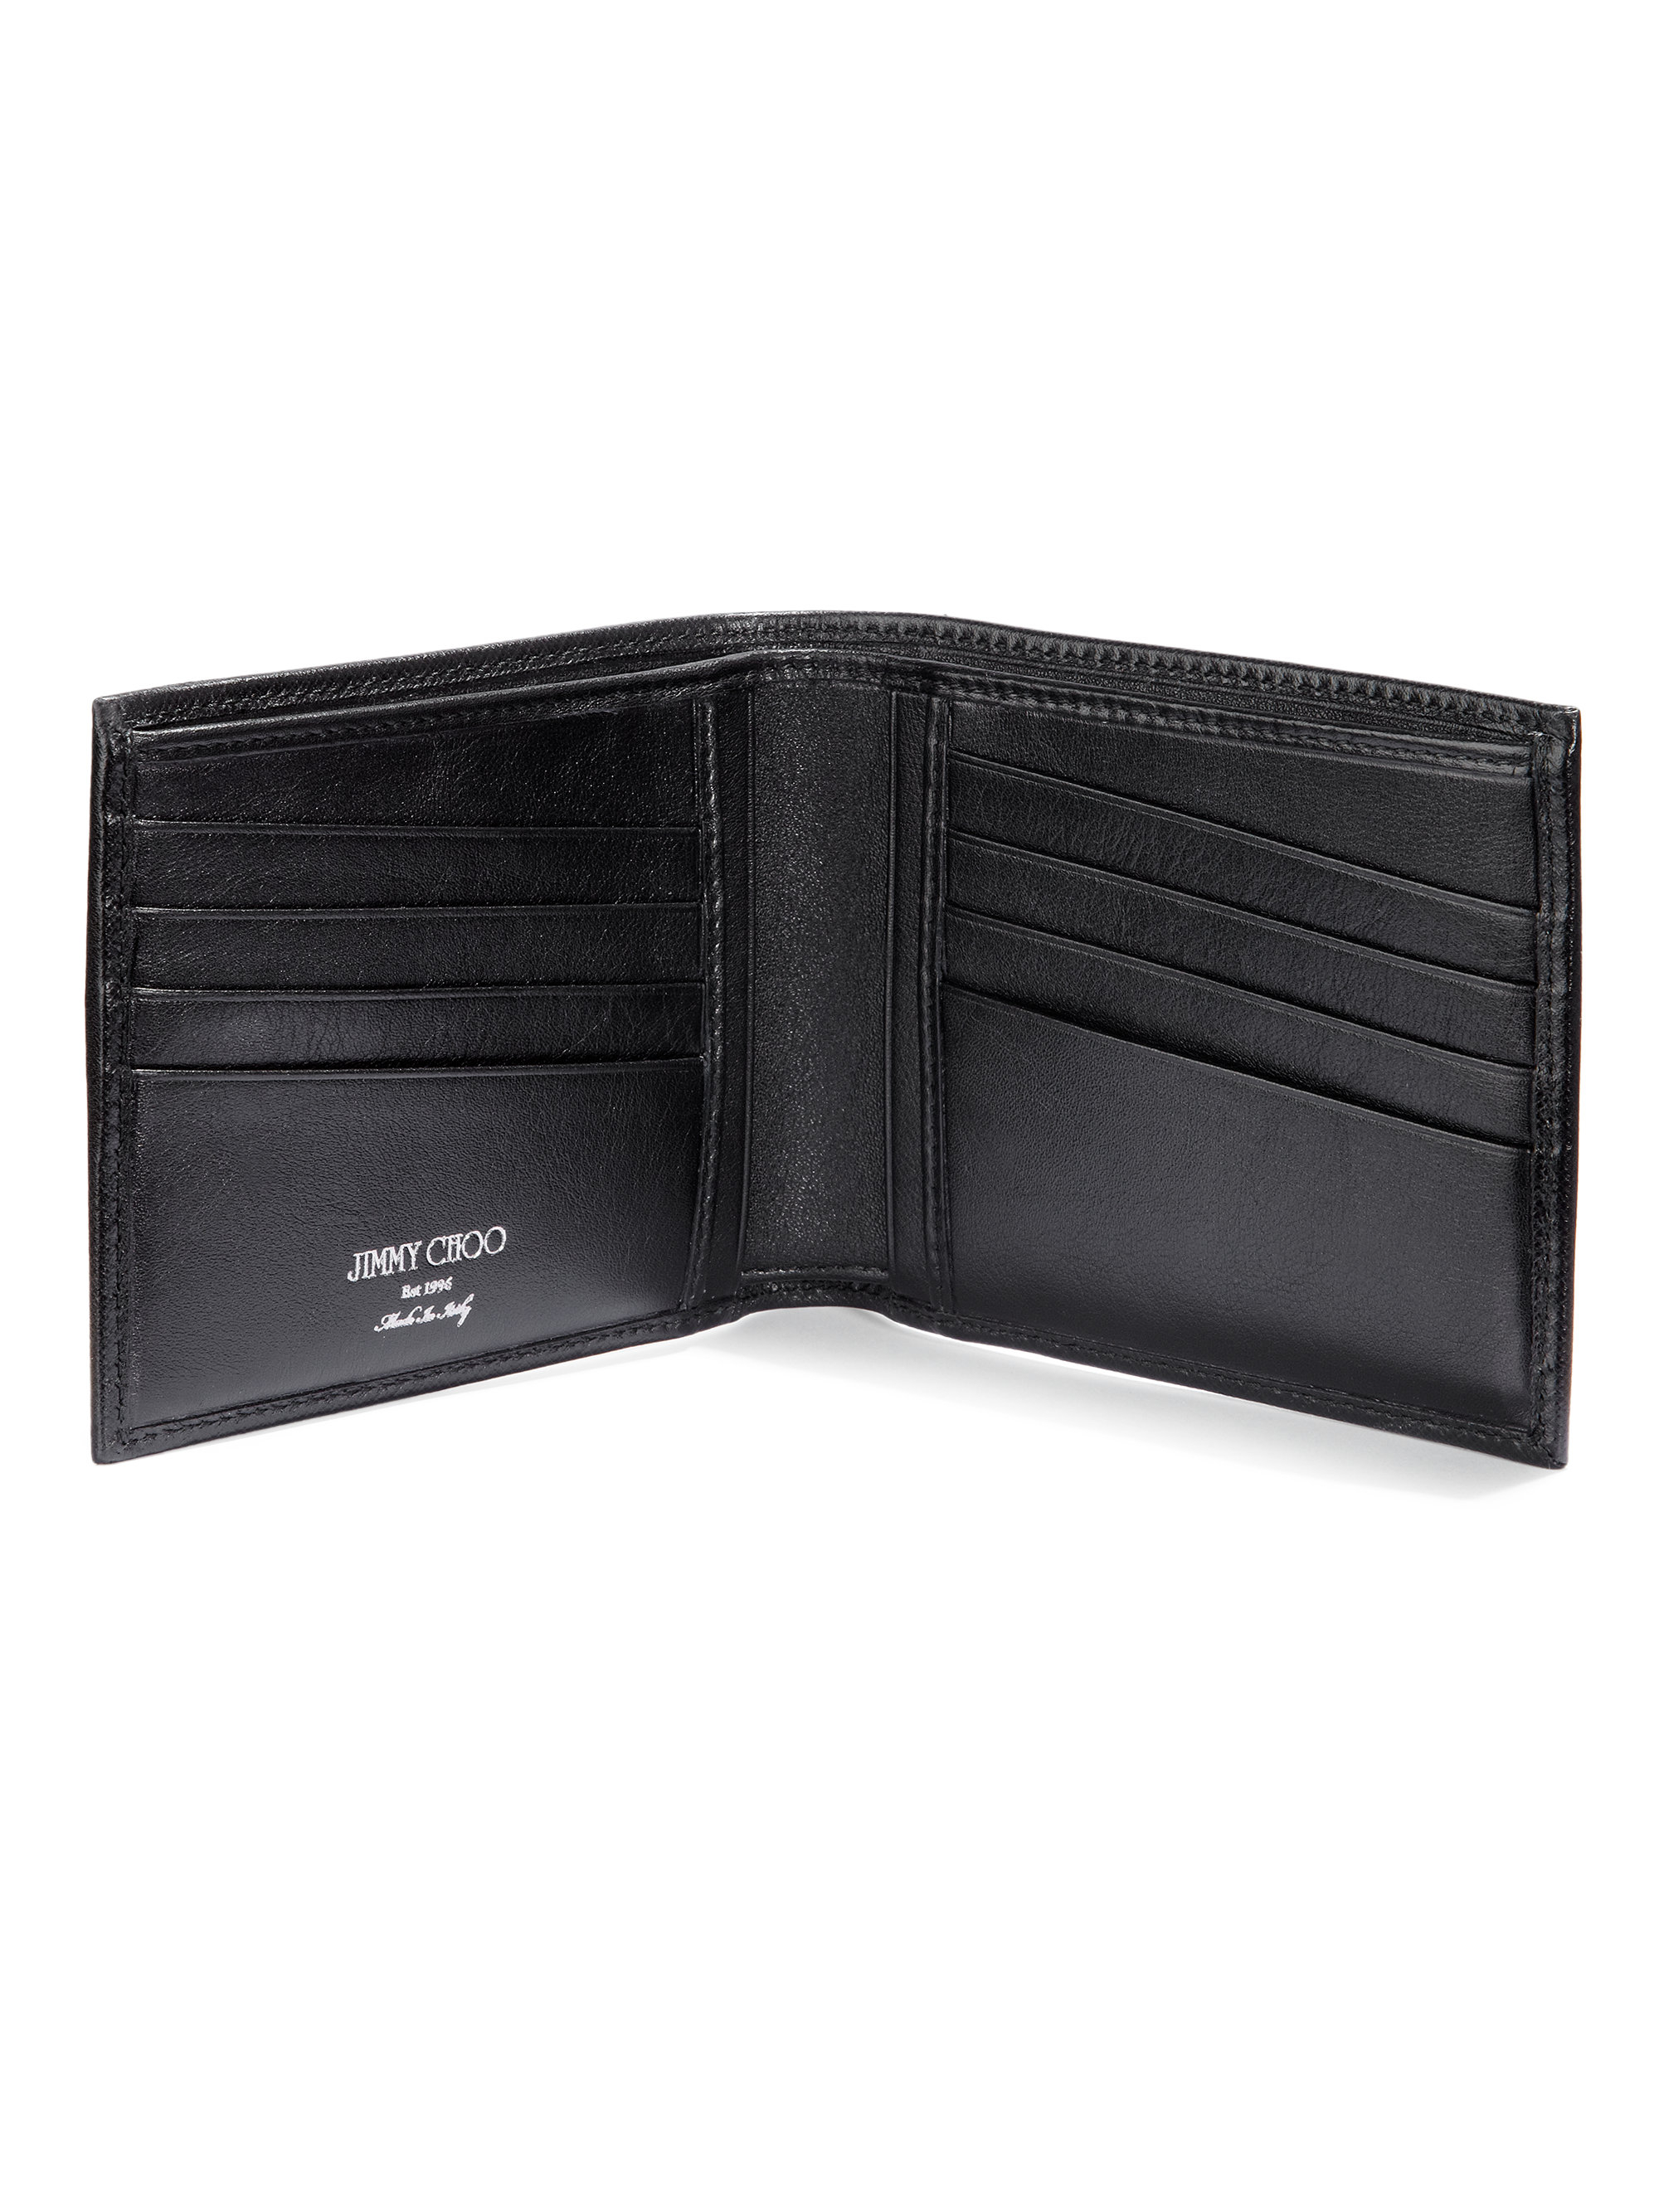 Lyst - Jimmy choo Mark Leather Billfold Wallet in Black for Men